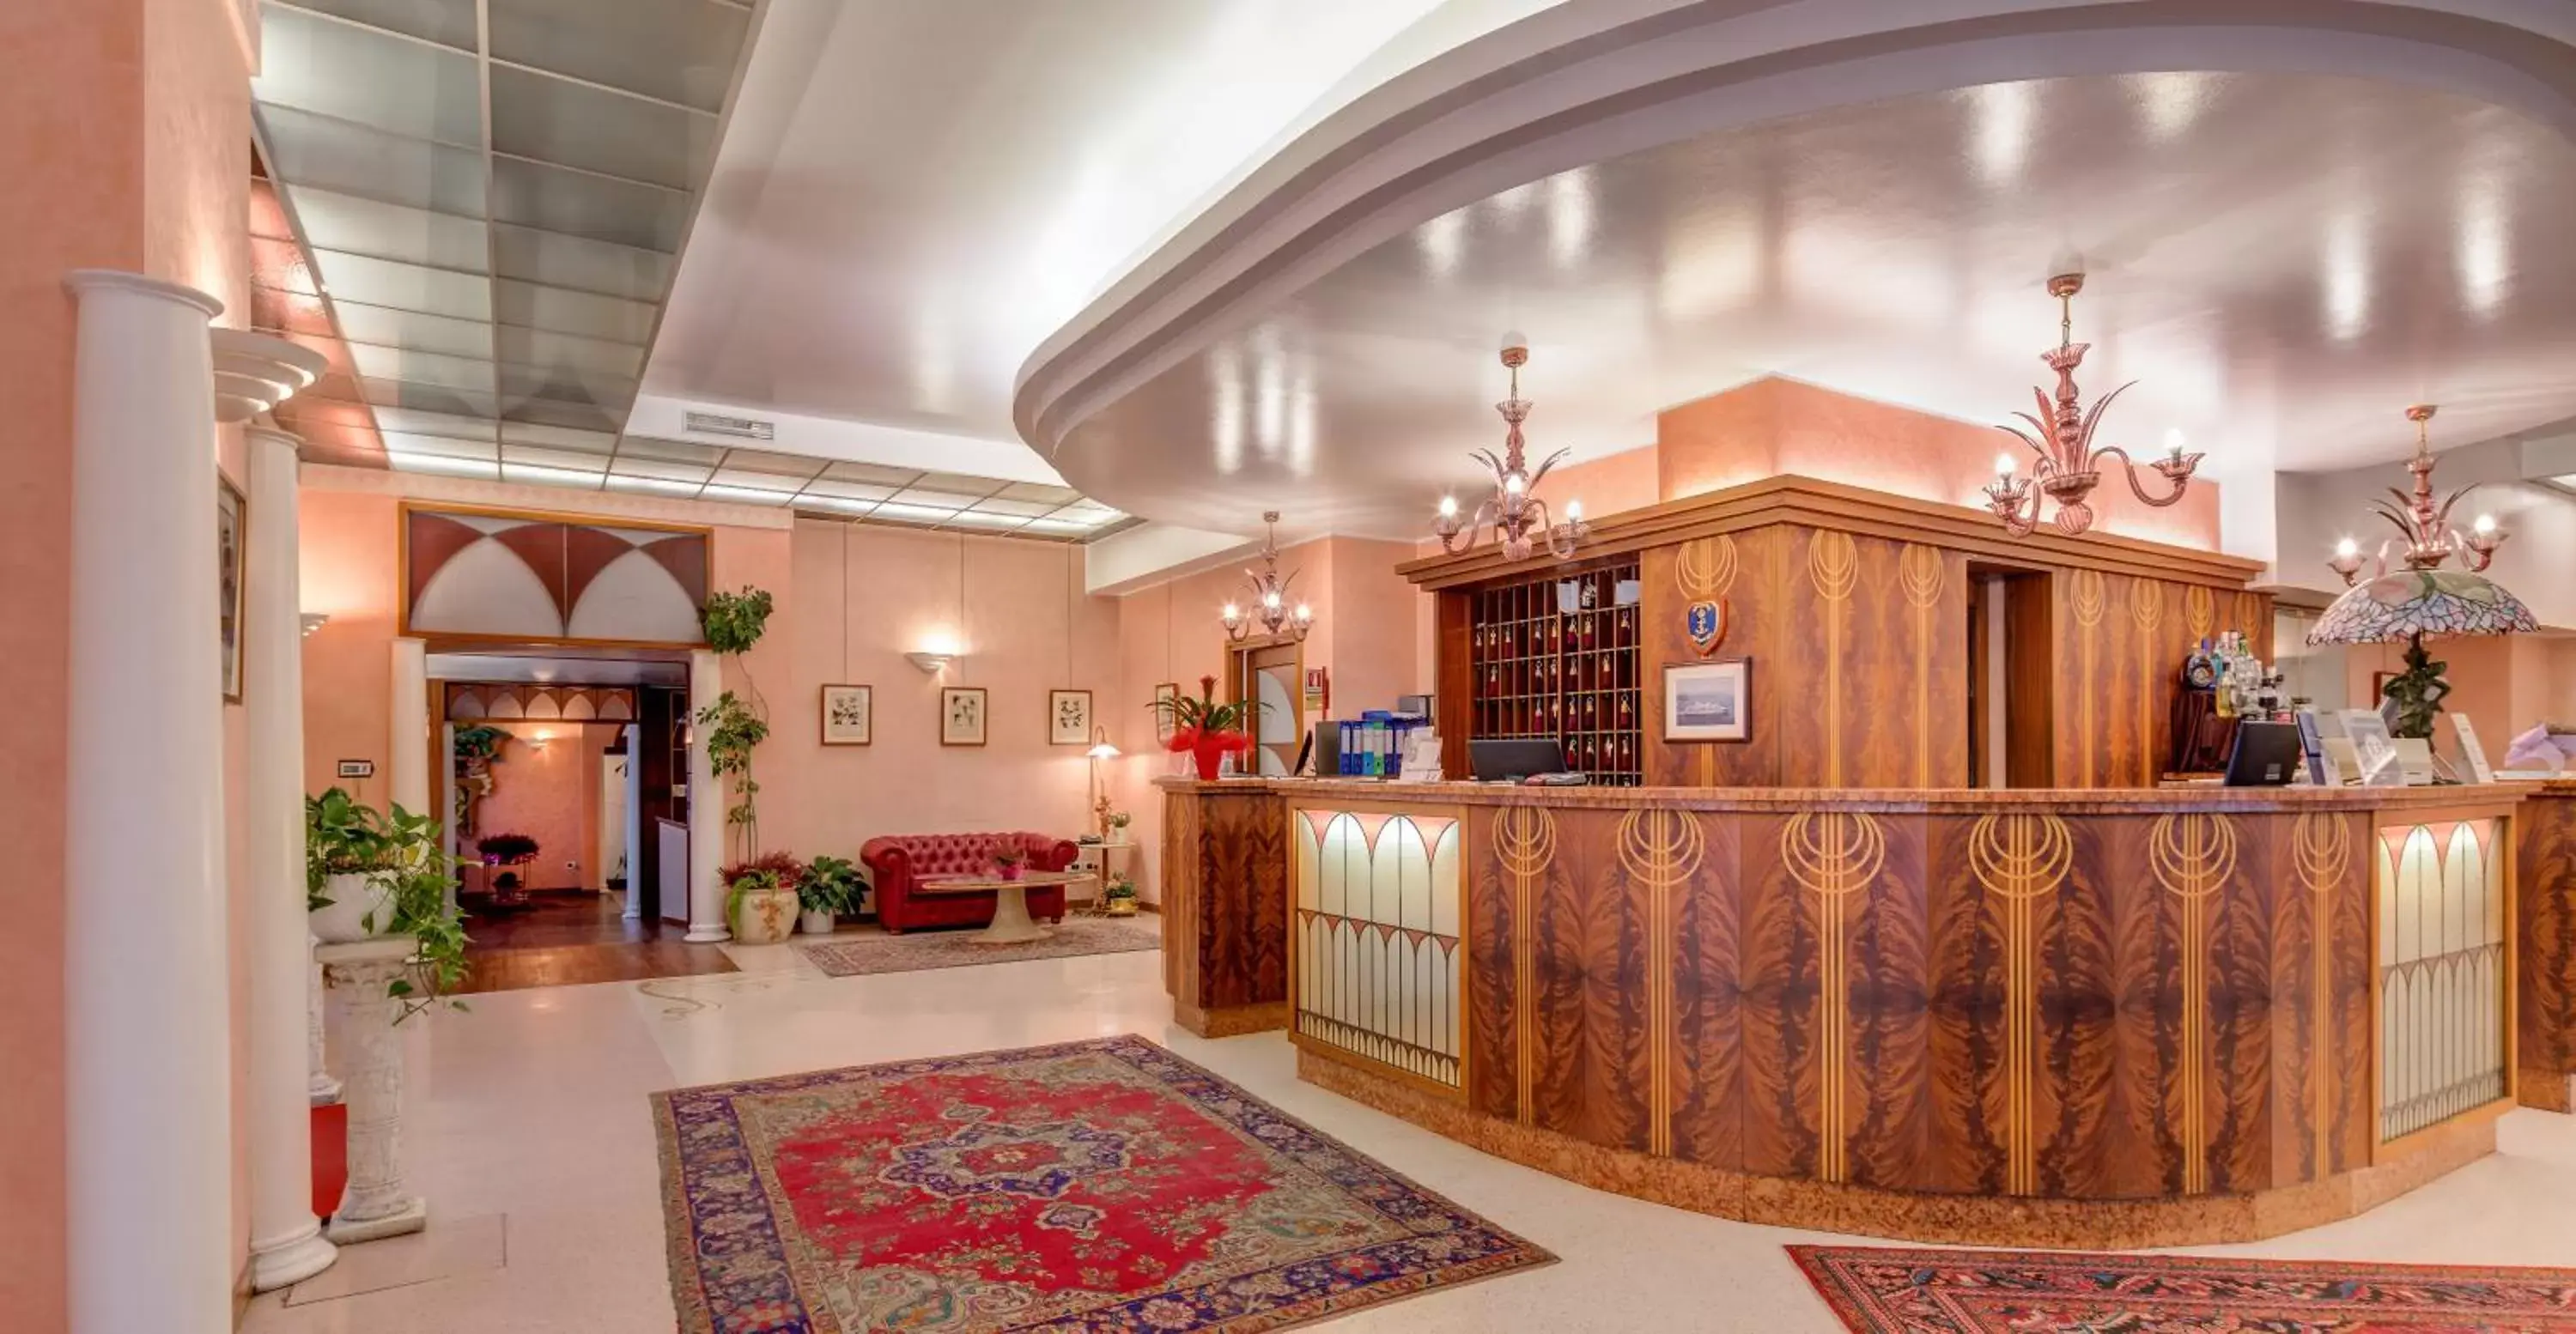 Lobby or reception, Lobby/Reception in Best Western Hotel San Giusto